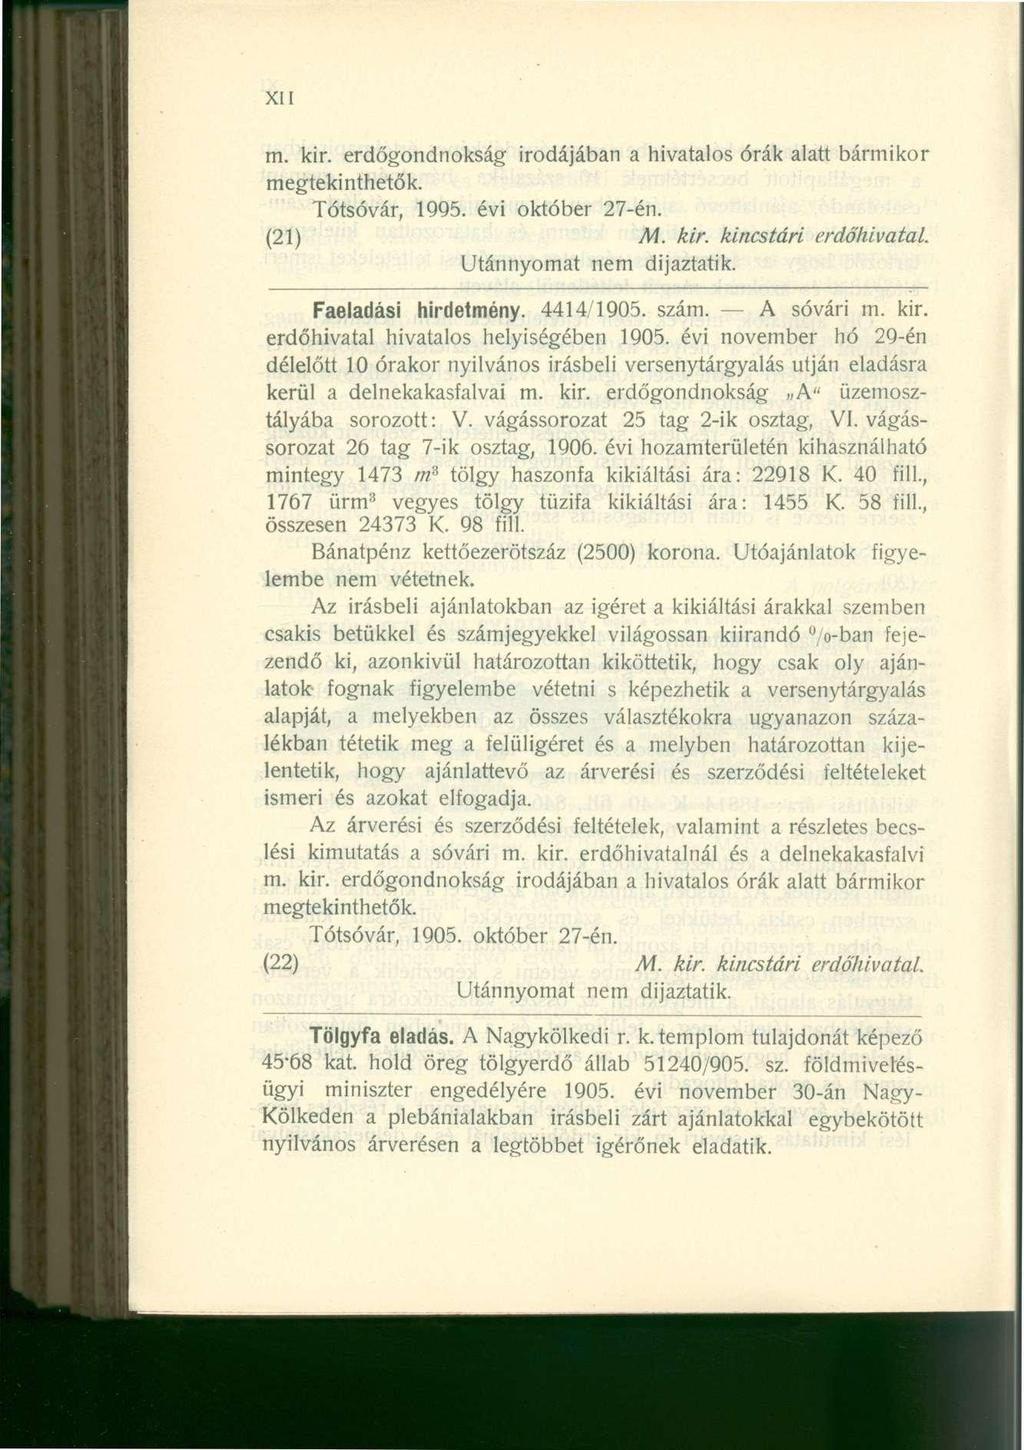 XII m. kir. erdőgondnokság irodájában a hivatalos órák alatt bármikor megtekinthetők. Tótsóvár, 1995. évi október 27-én. (21) M. kir. kincstári erdőhivatal. Utánnyomat nem dijaztatik.